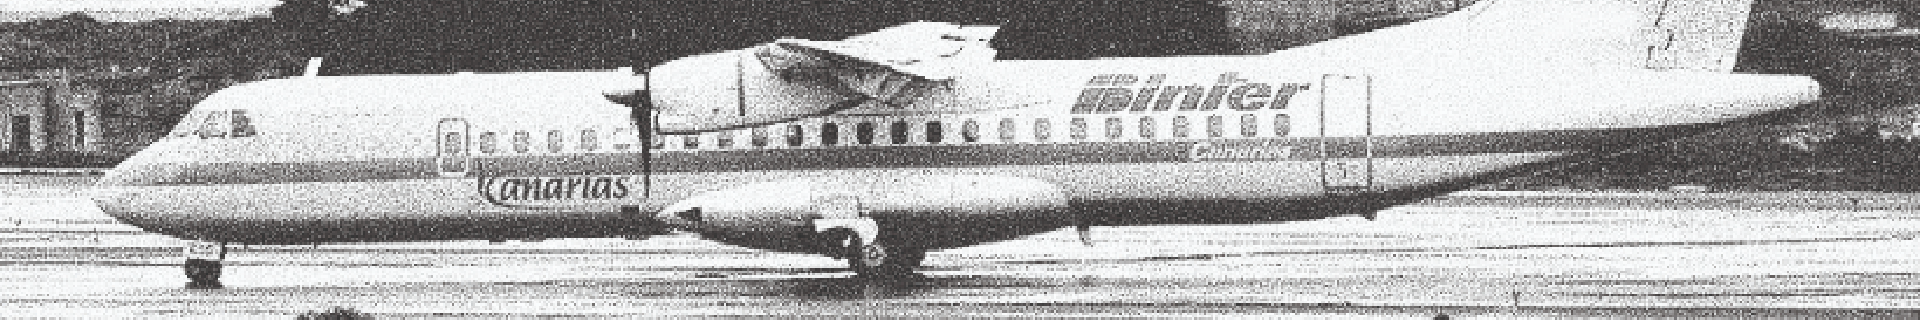 Binter's former ATR aircraft in flight